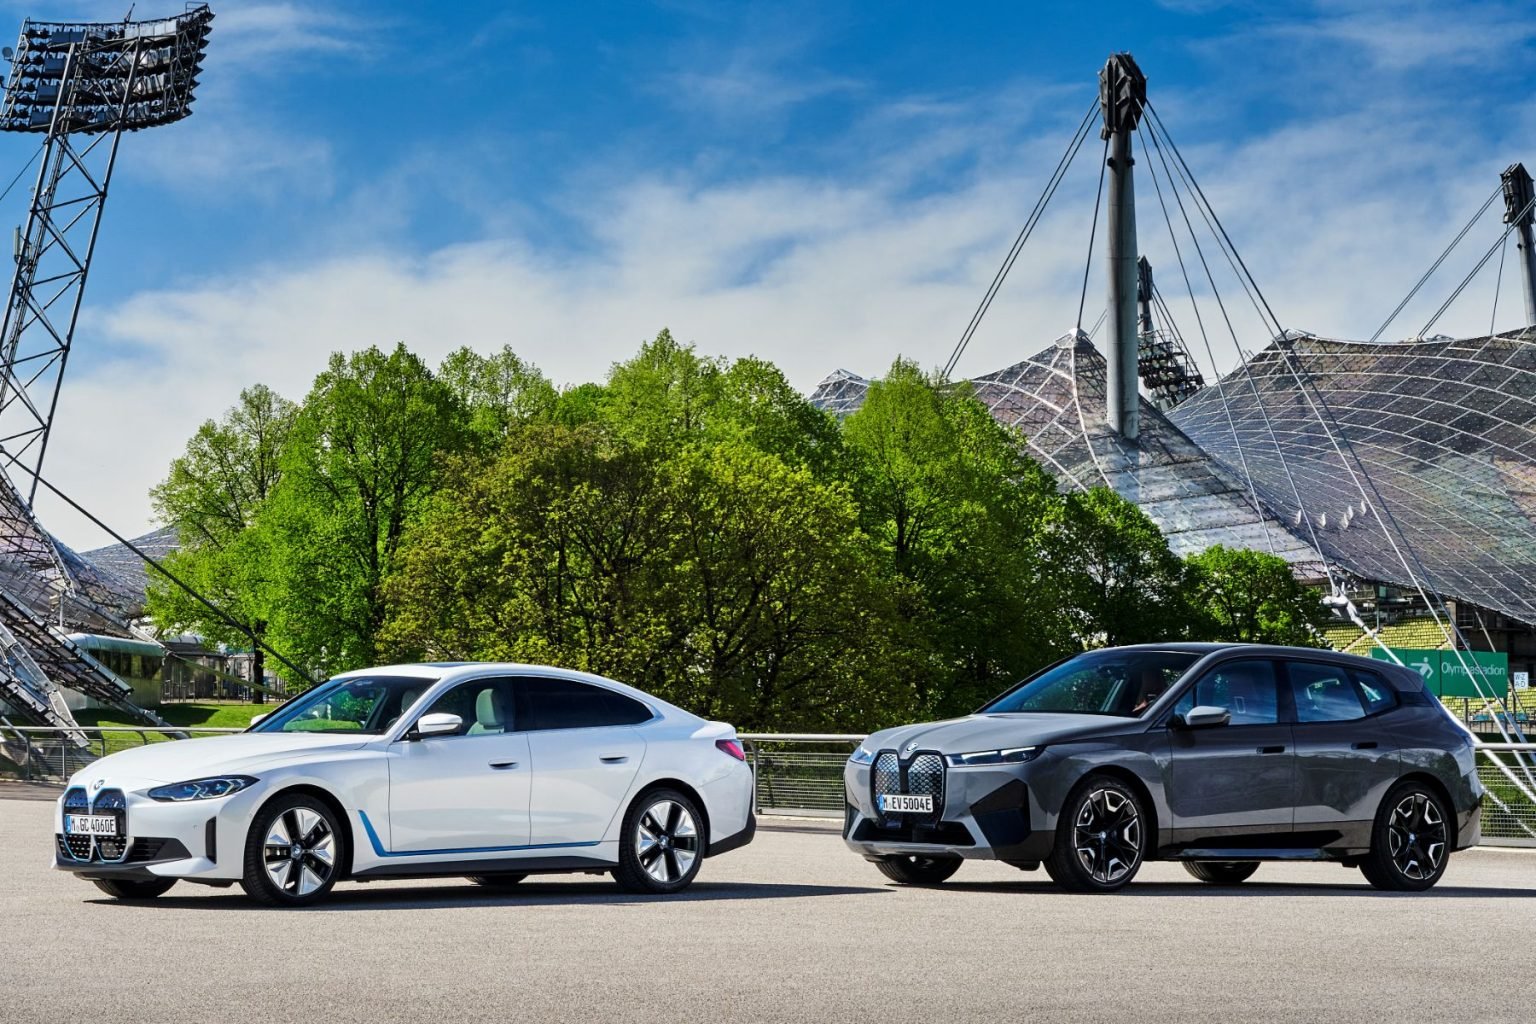 BMW confirma chegada de elétricos i4 e iX no Brasil “em breve”